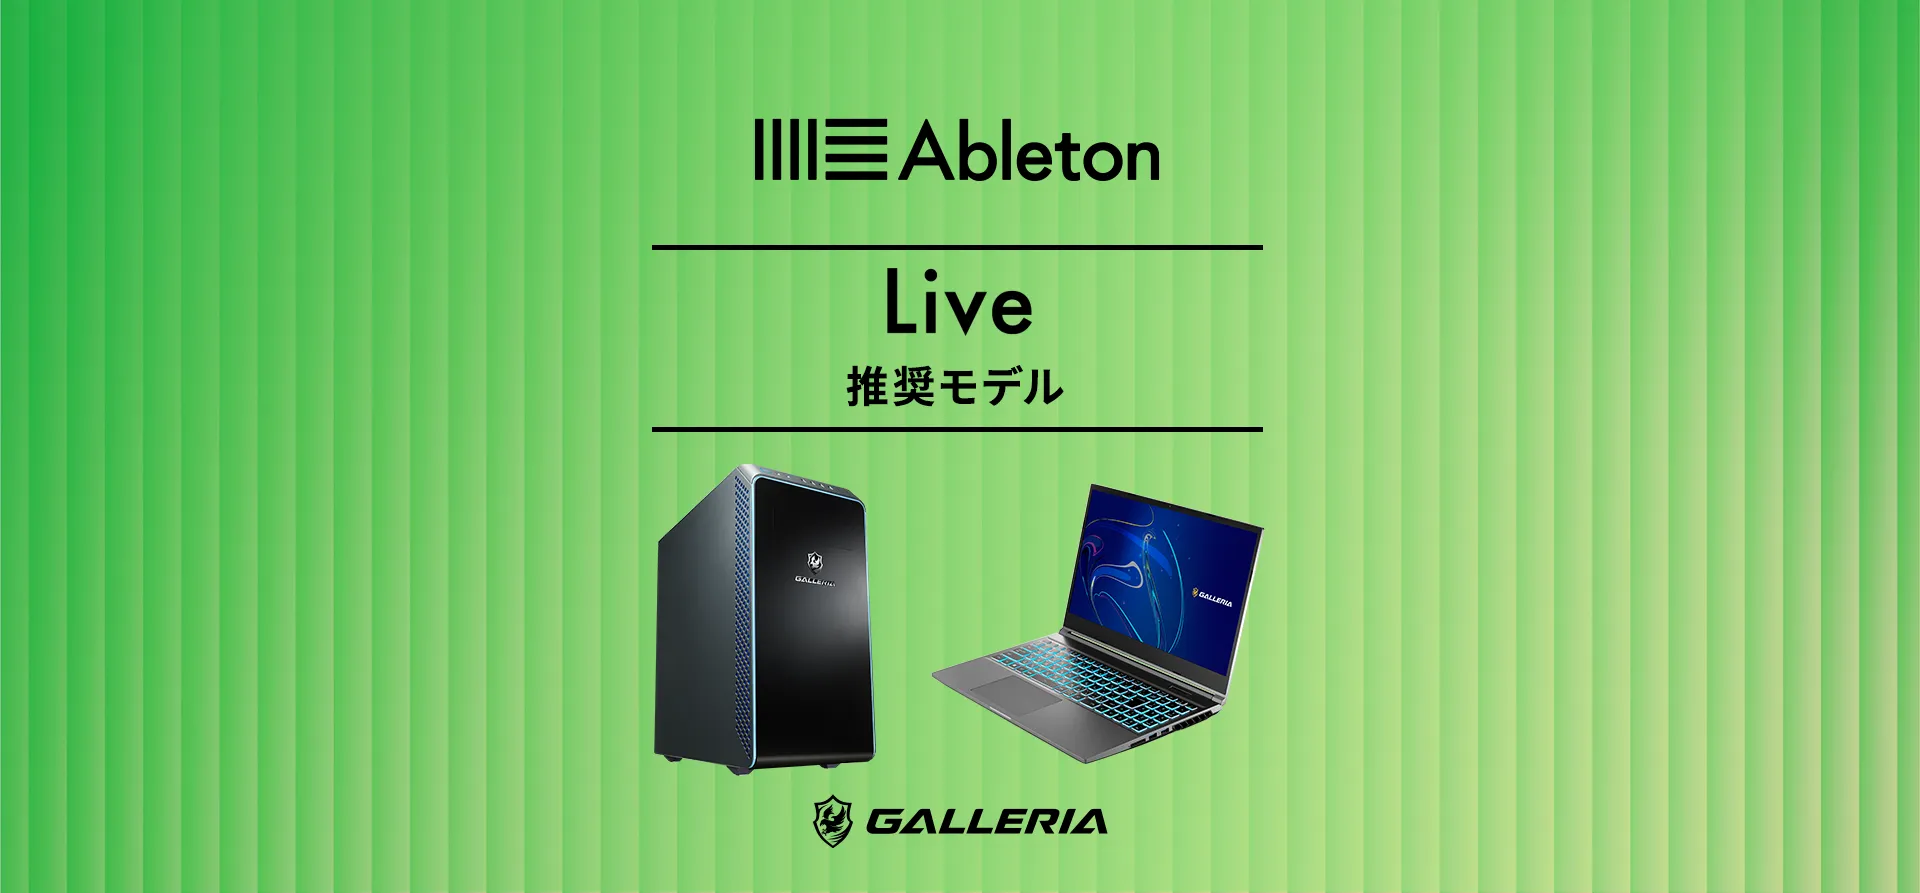 Ableton Live推奨モデル